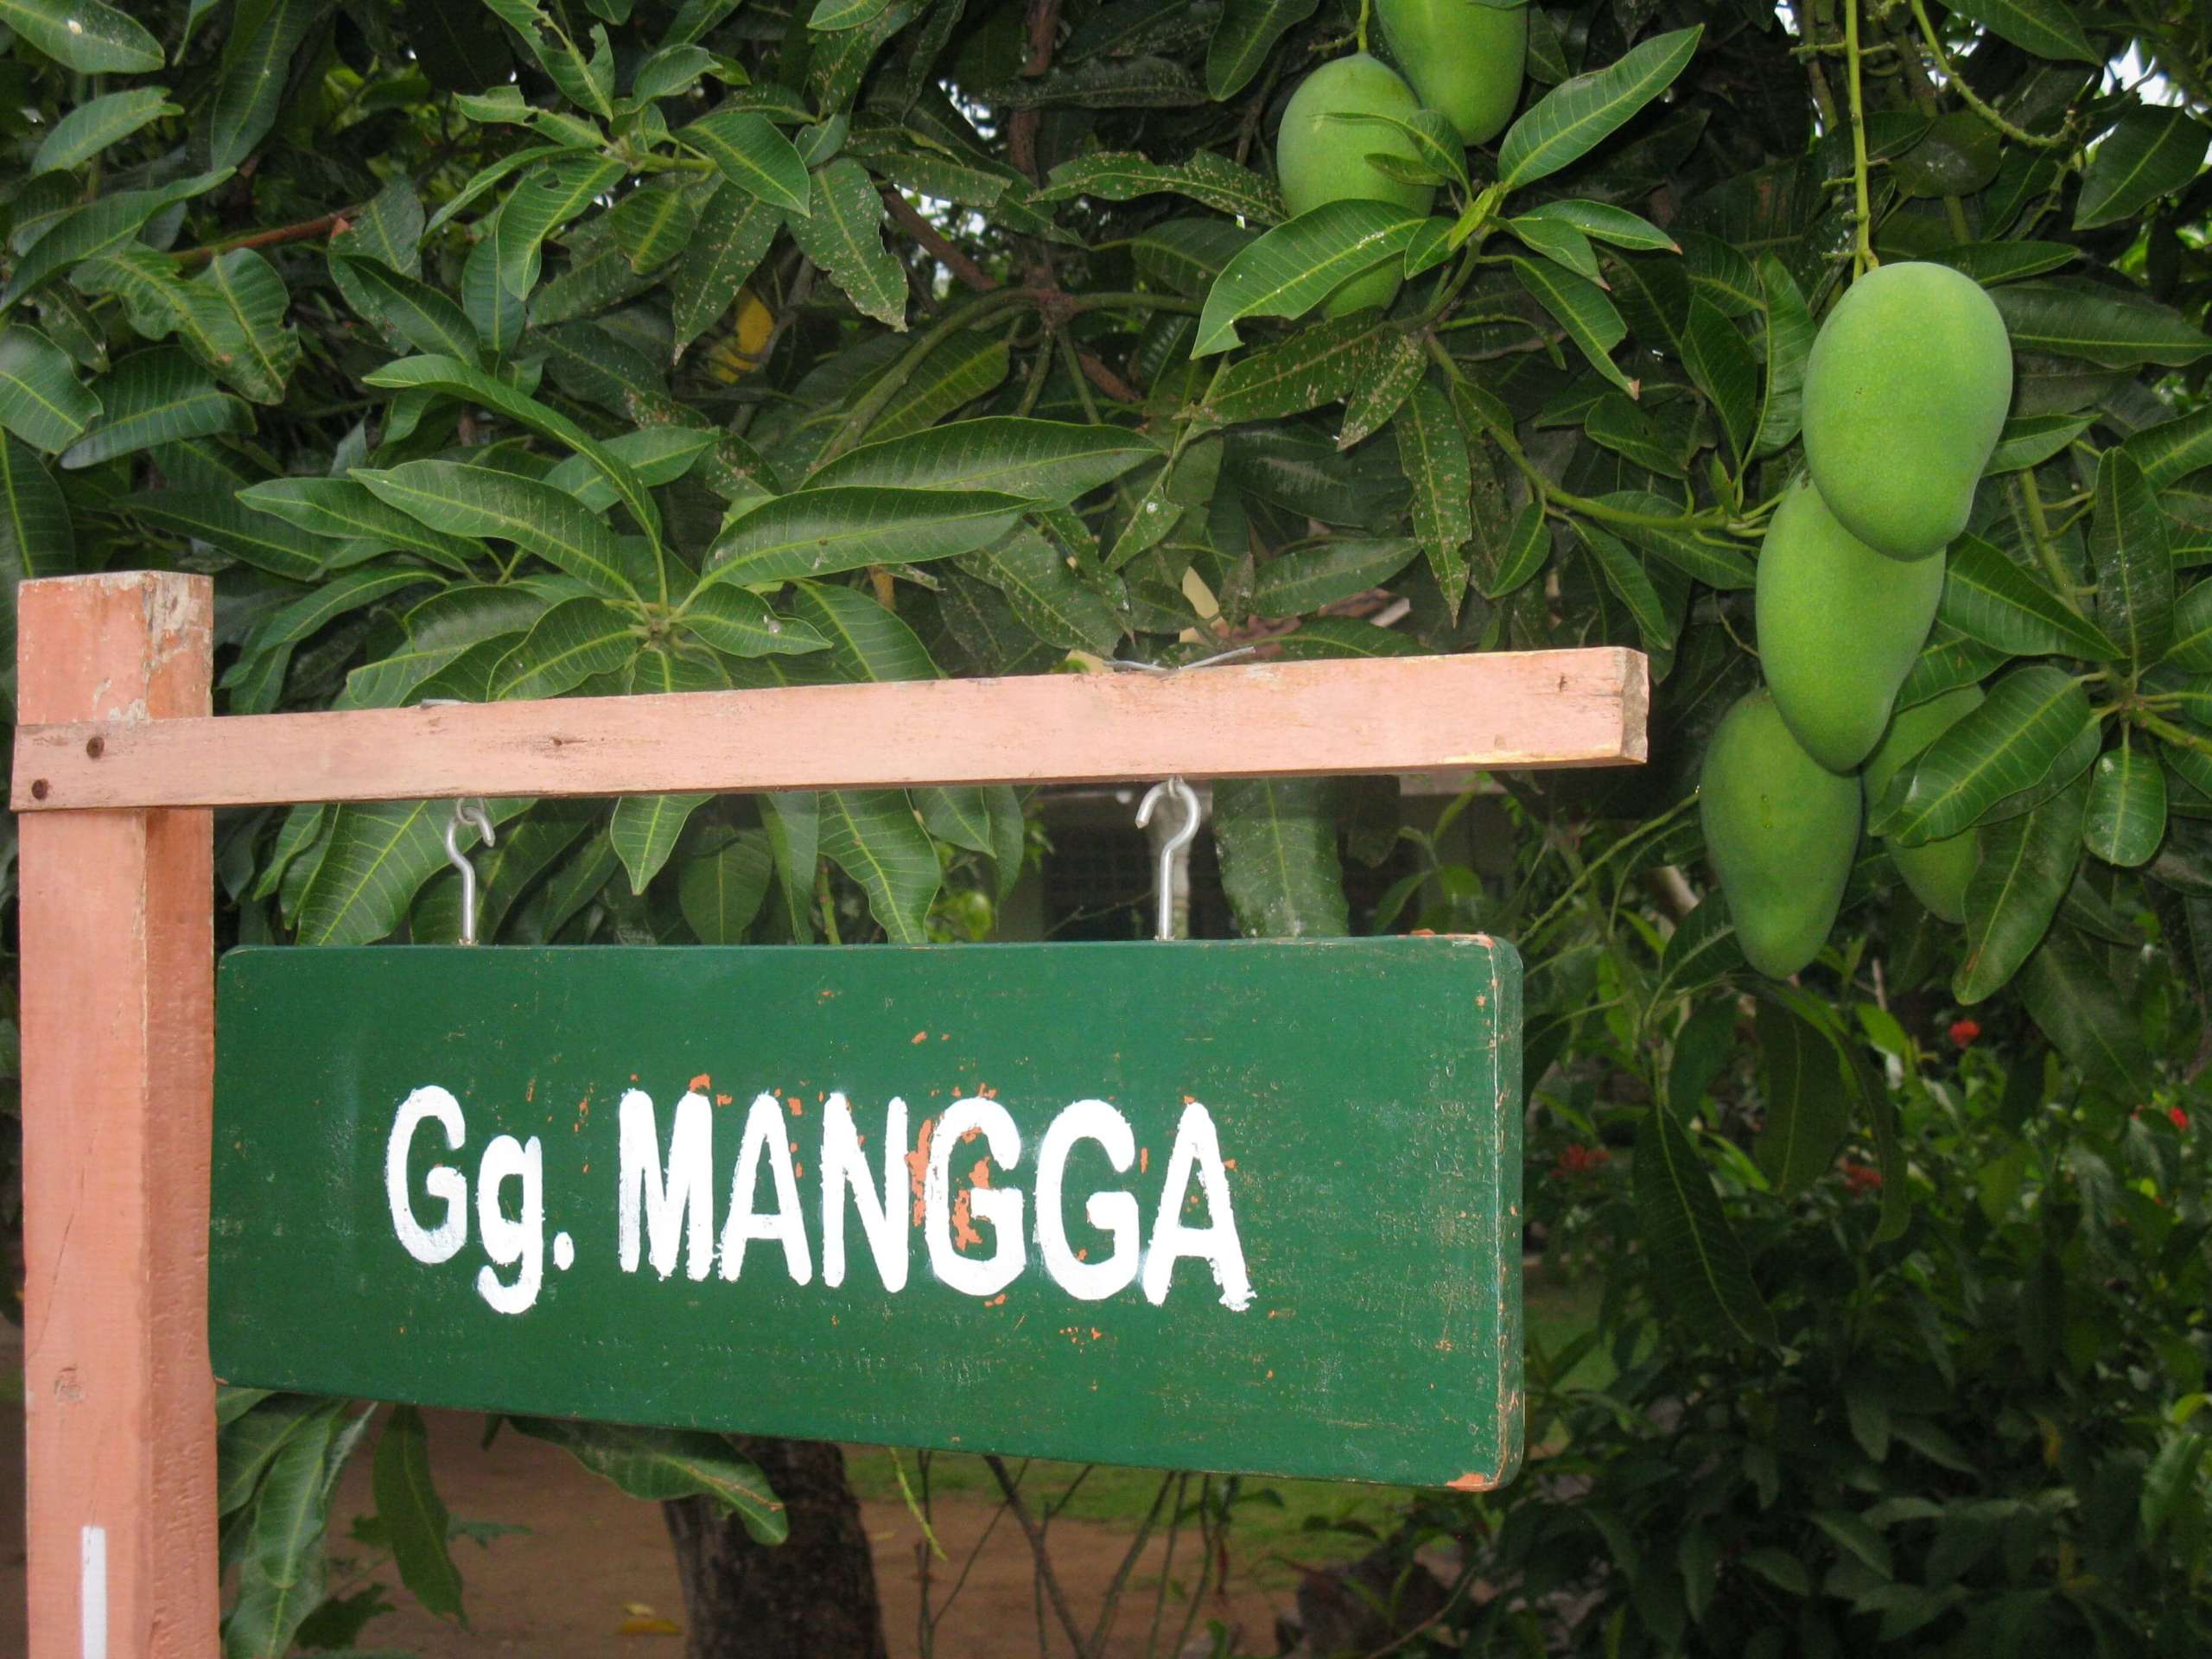 Gg. Mangga